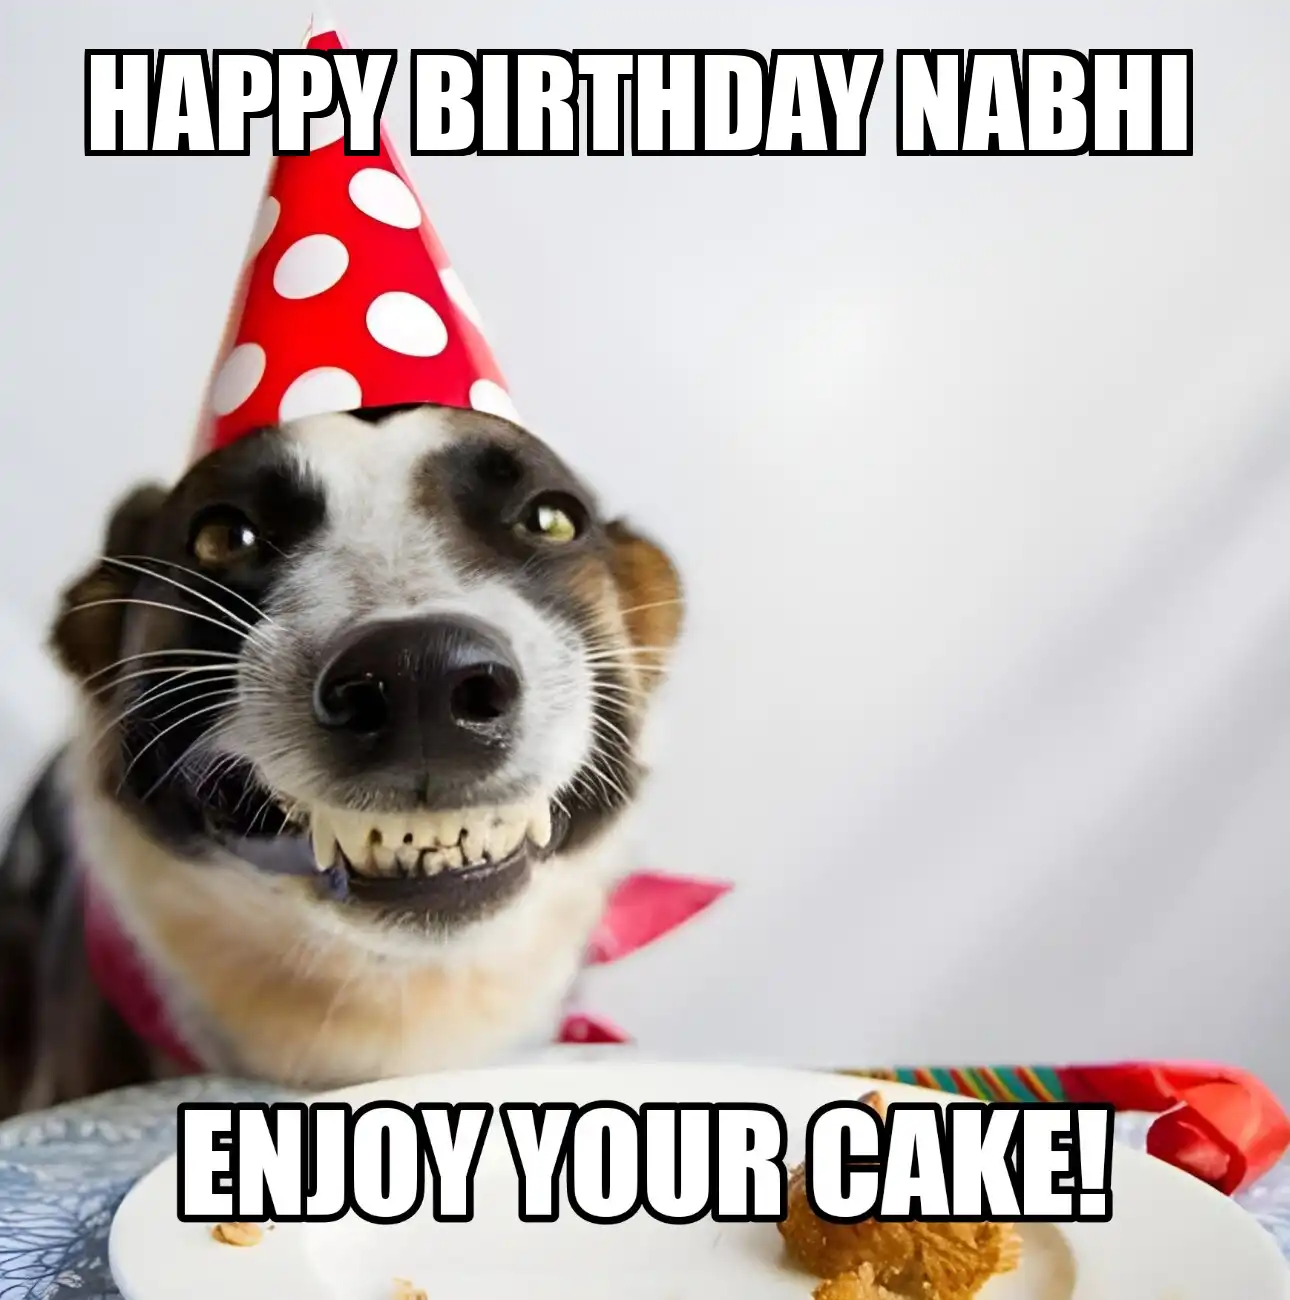 Happy Birthday Nabhi Enjoy Your Cake Dog Meme